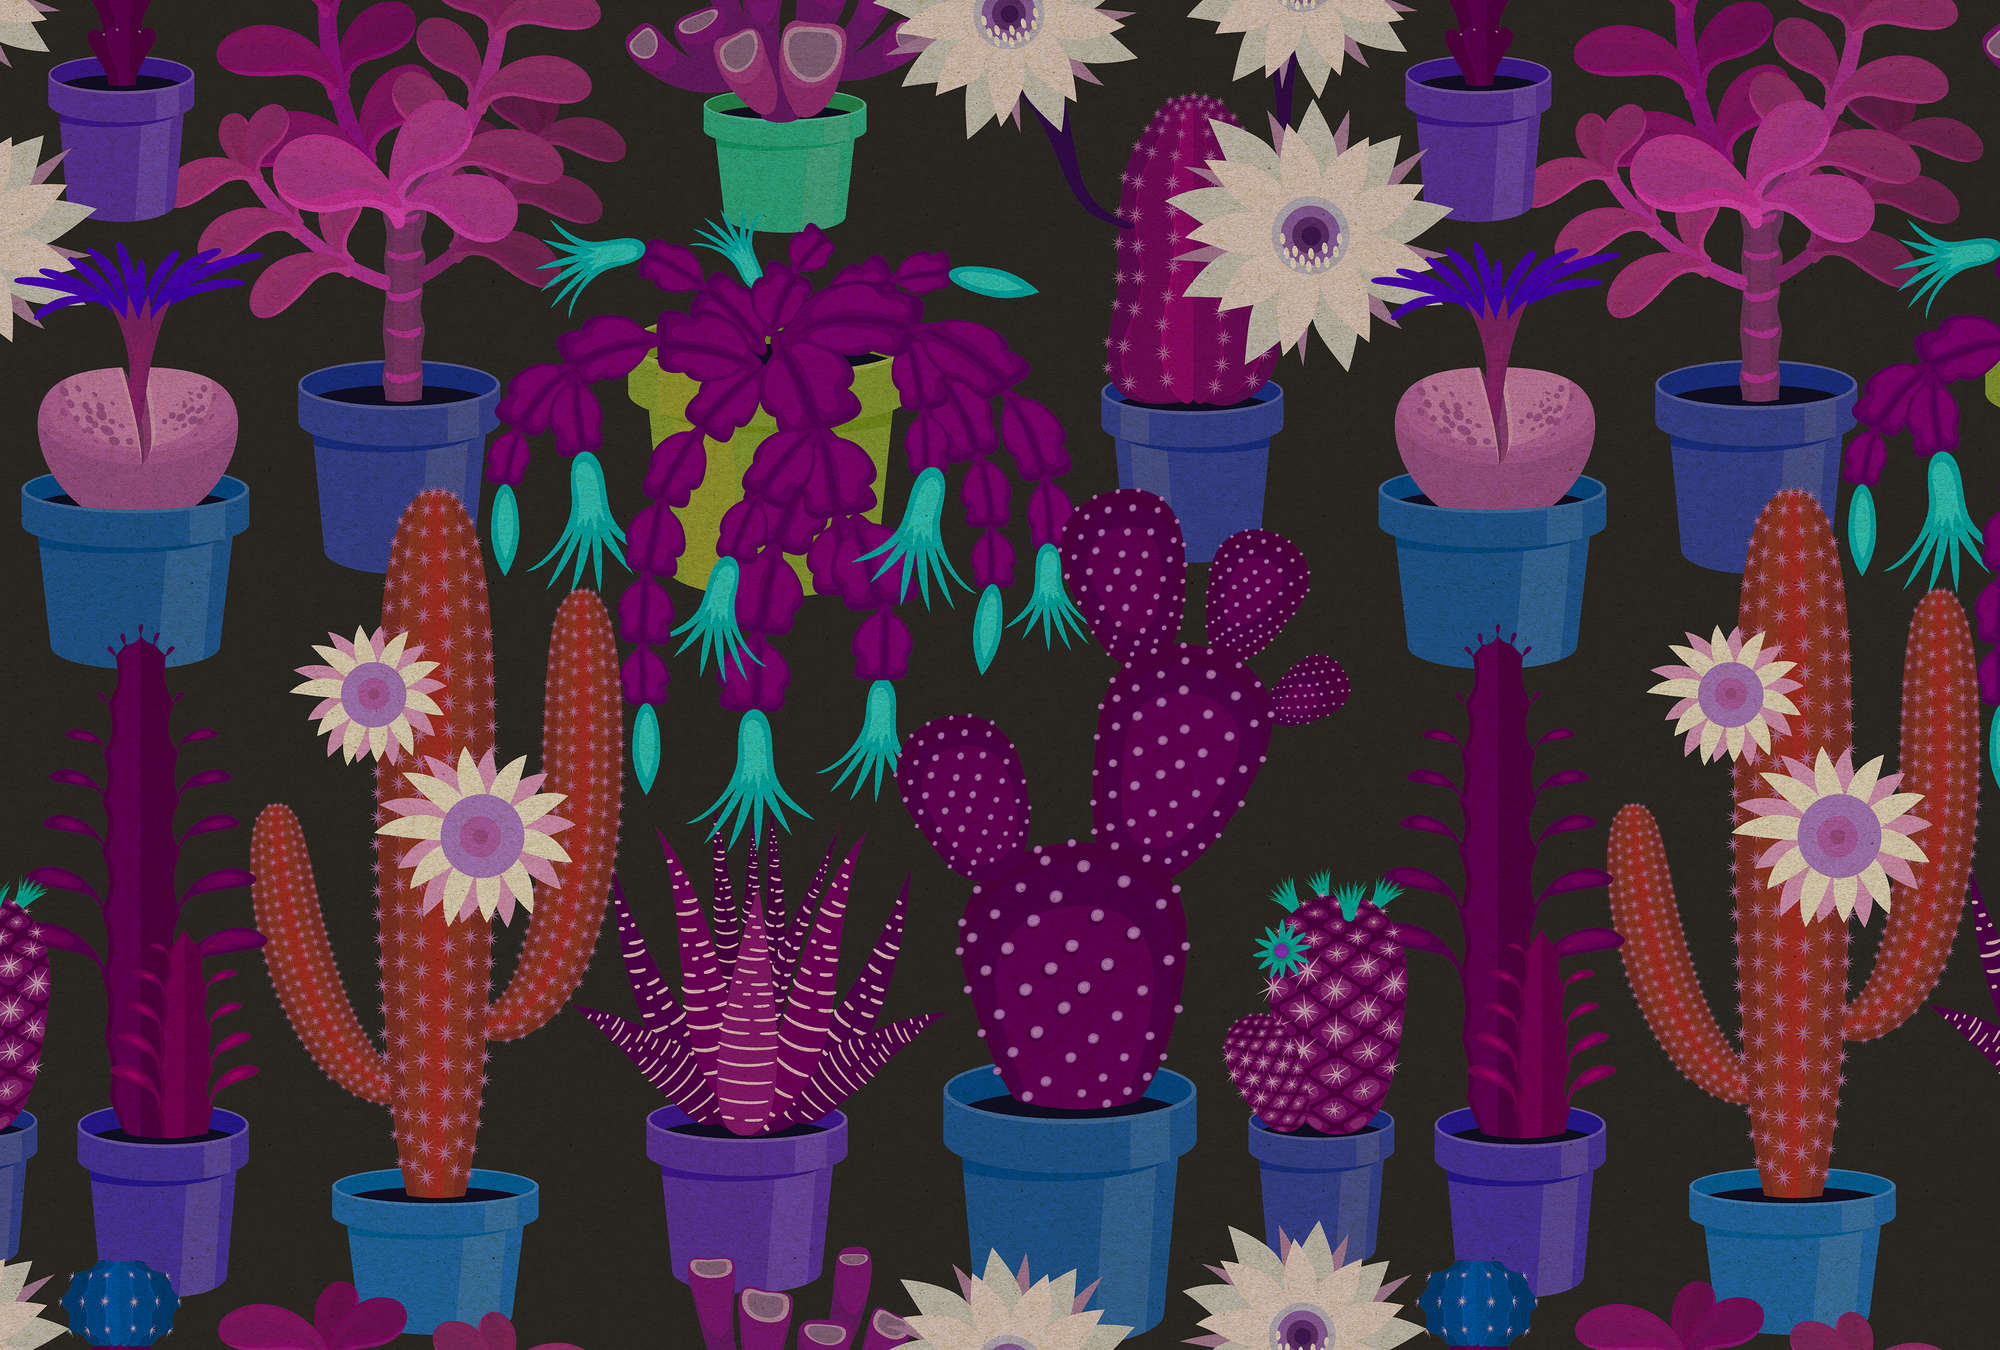             Cactus garden 1 - Fototapete in Pappe Struktur mit bunten Kakteen im Comic Stil – Blau, Orange | Perlmutt Glattvlies
        